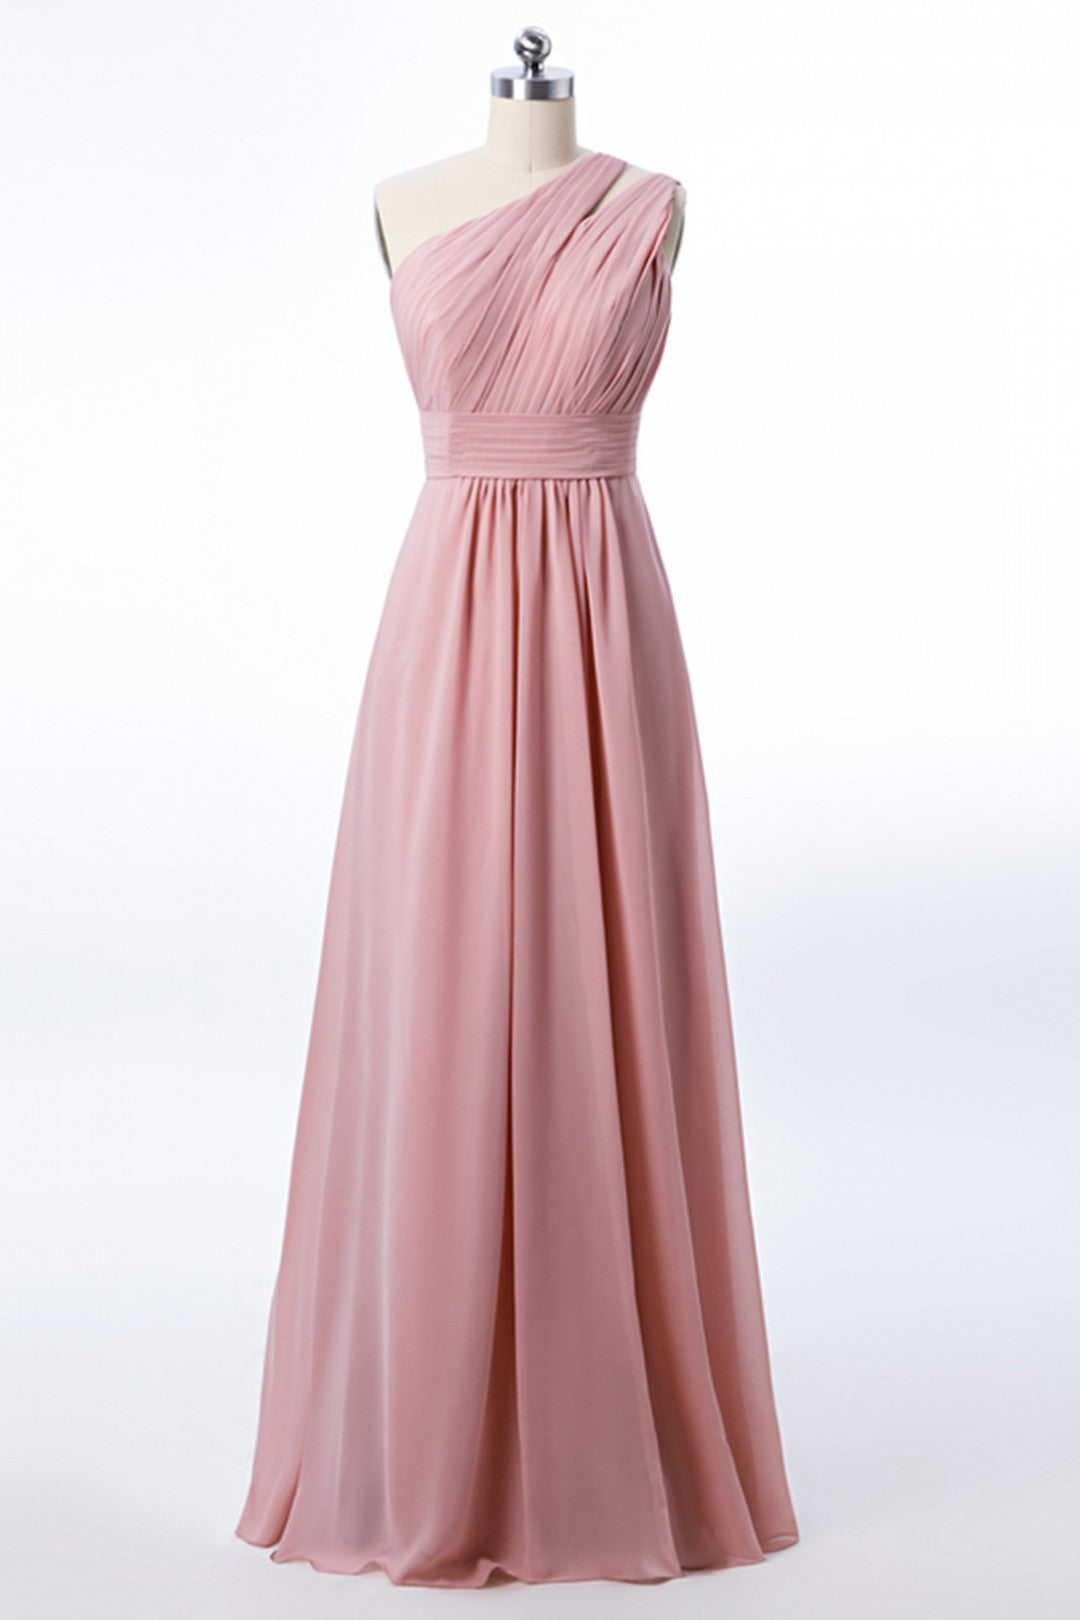 Prom Dress Pattern, One Shoulder Blush Pink Chiffon A-line Bridesmaid Dress